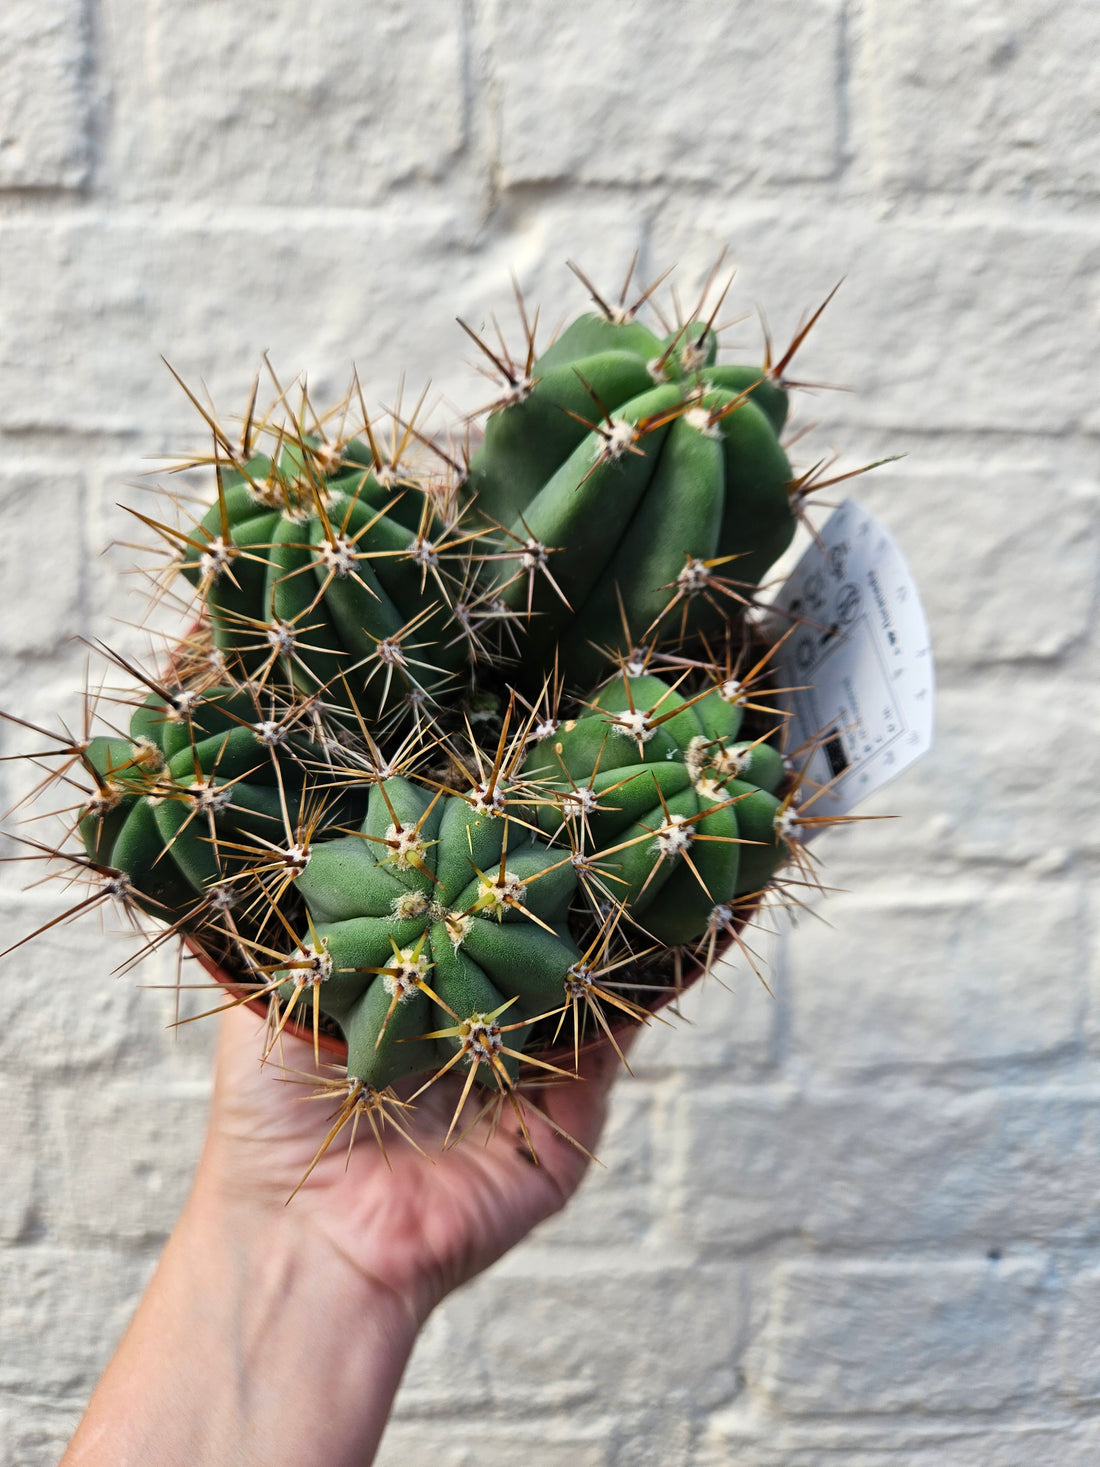 Cactus varieties (Mixed cacti varieties in 12cm pot)